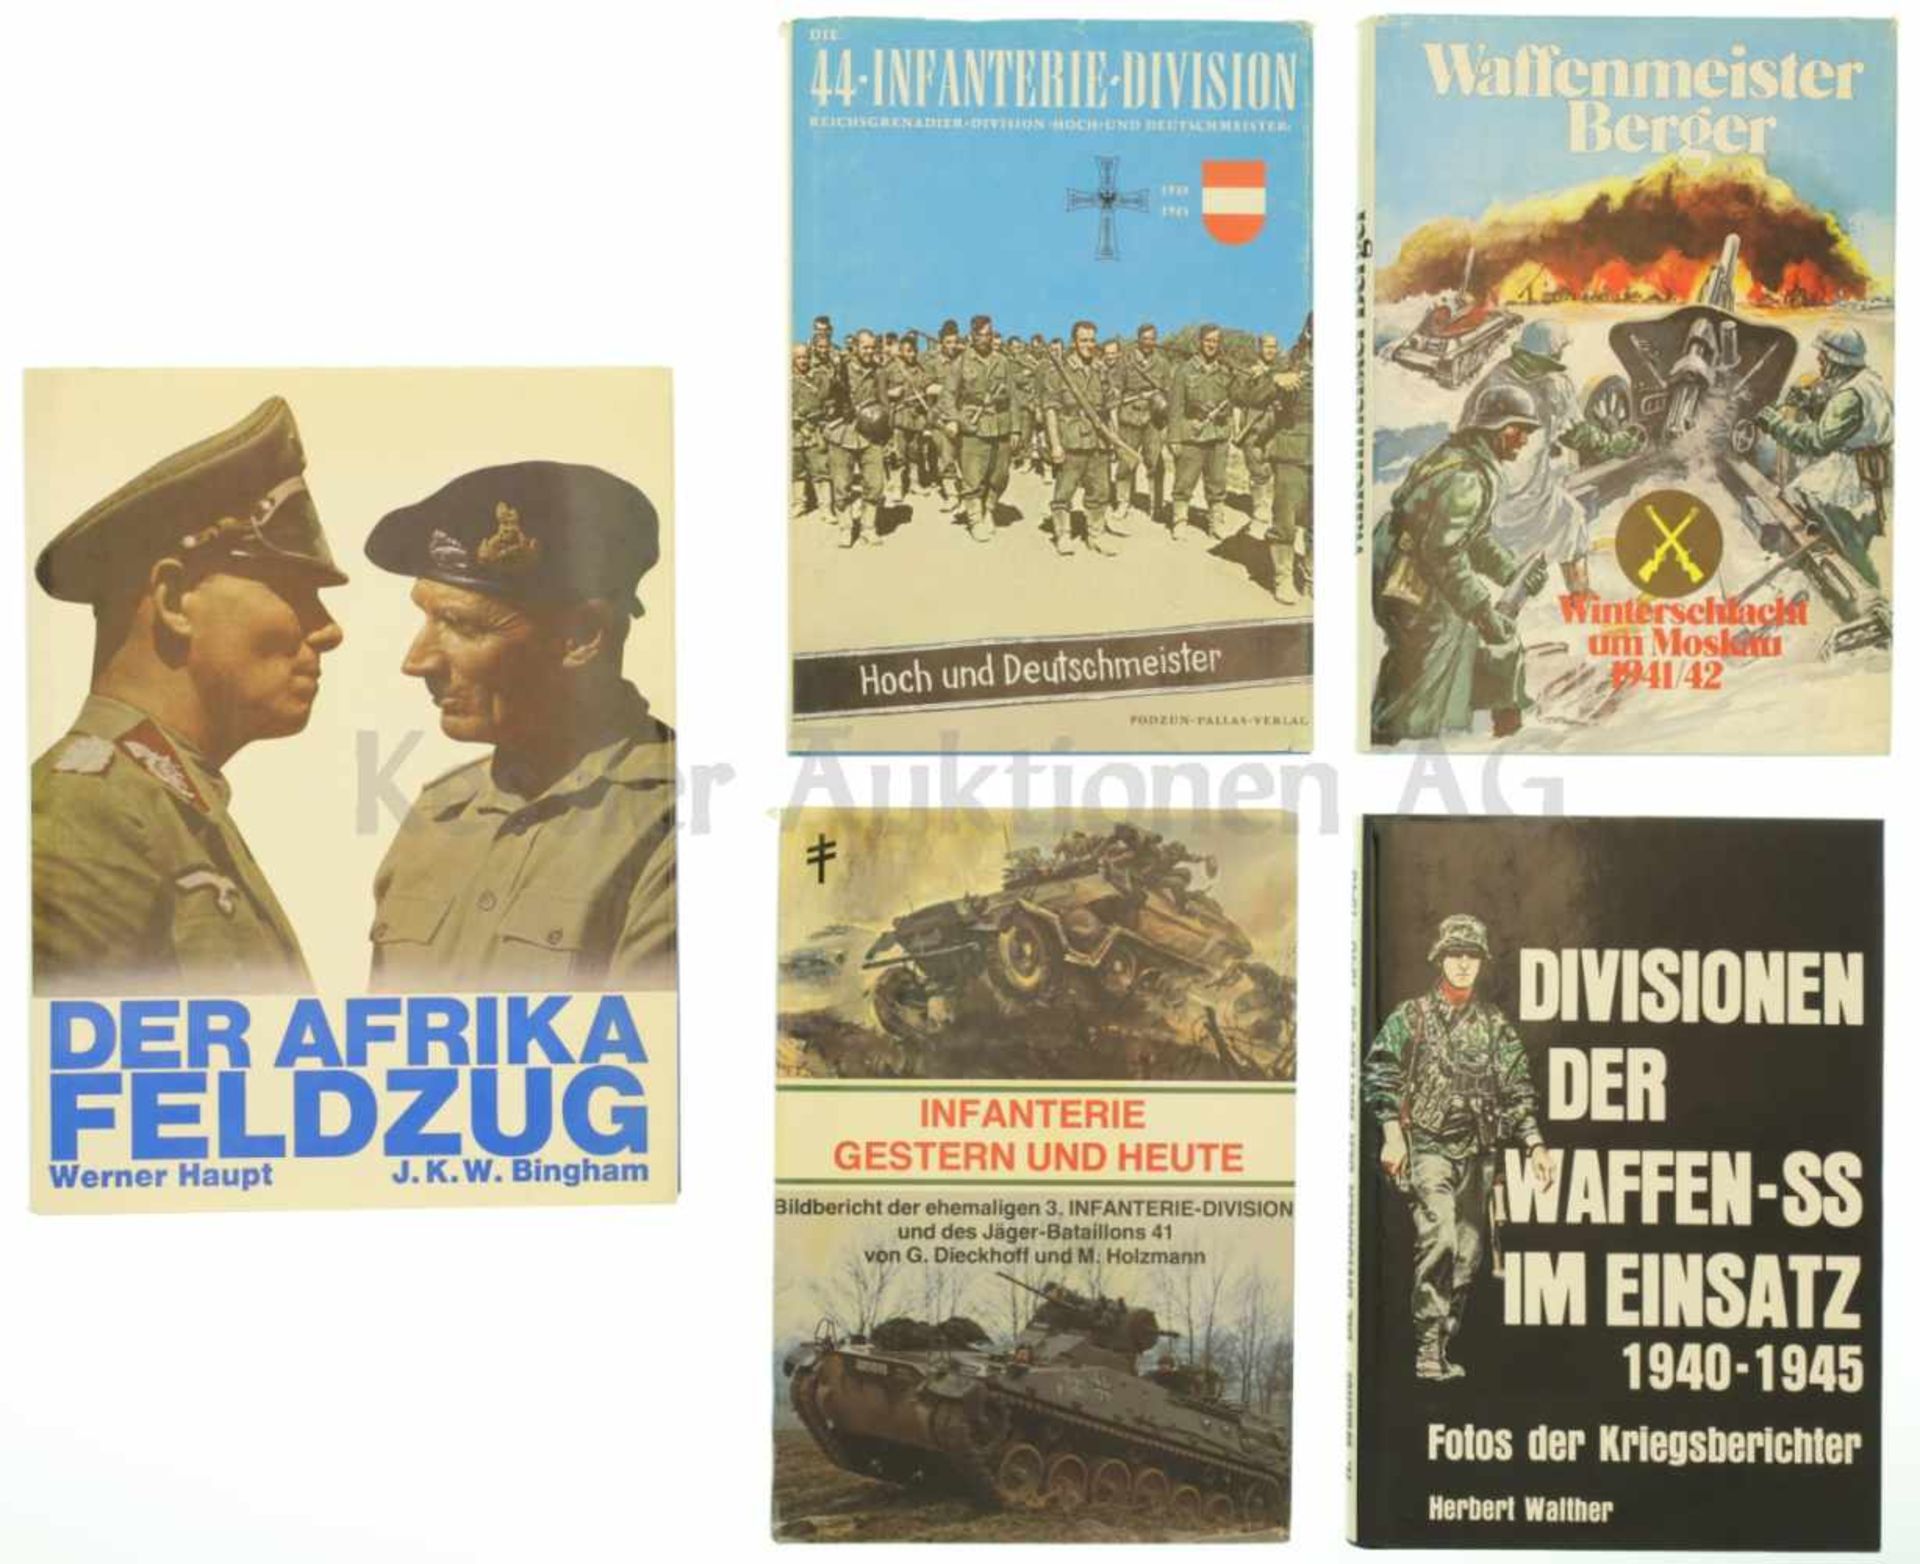 Konvolut von 5 Büchern 1. Die 44. Infanterie Division, 2. Infanterie gestern und heute, 3.